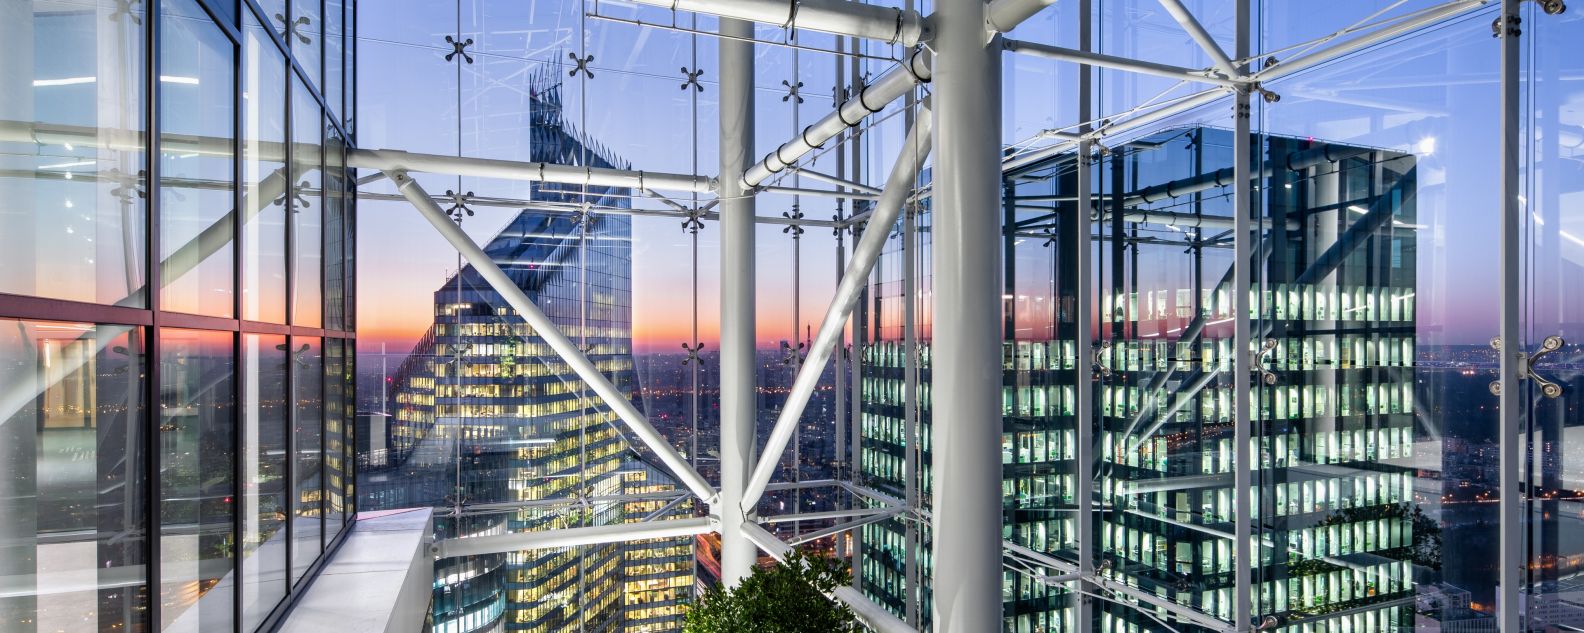 Vista de un edificio alto al atardecer a través de la estructura metálica y de vidrio de otro edificio alto